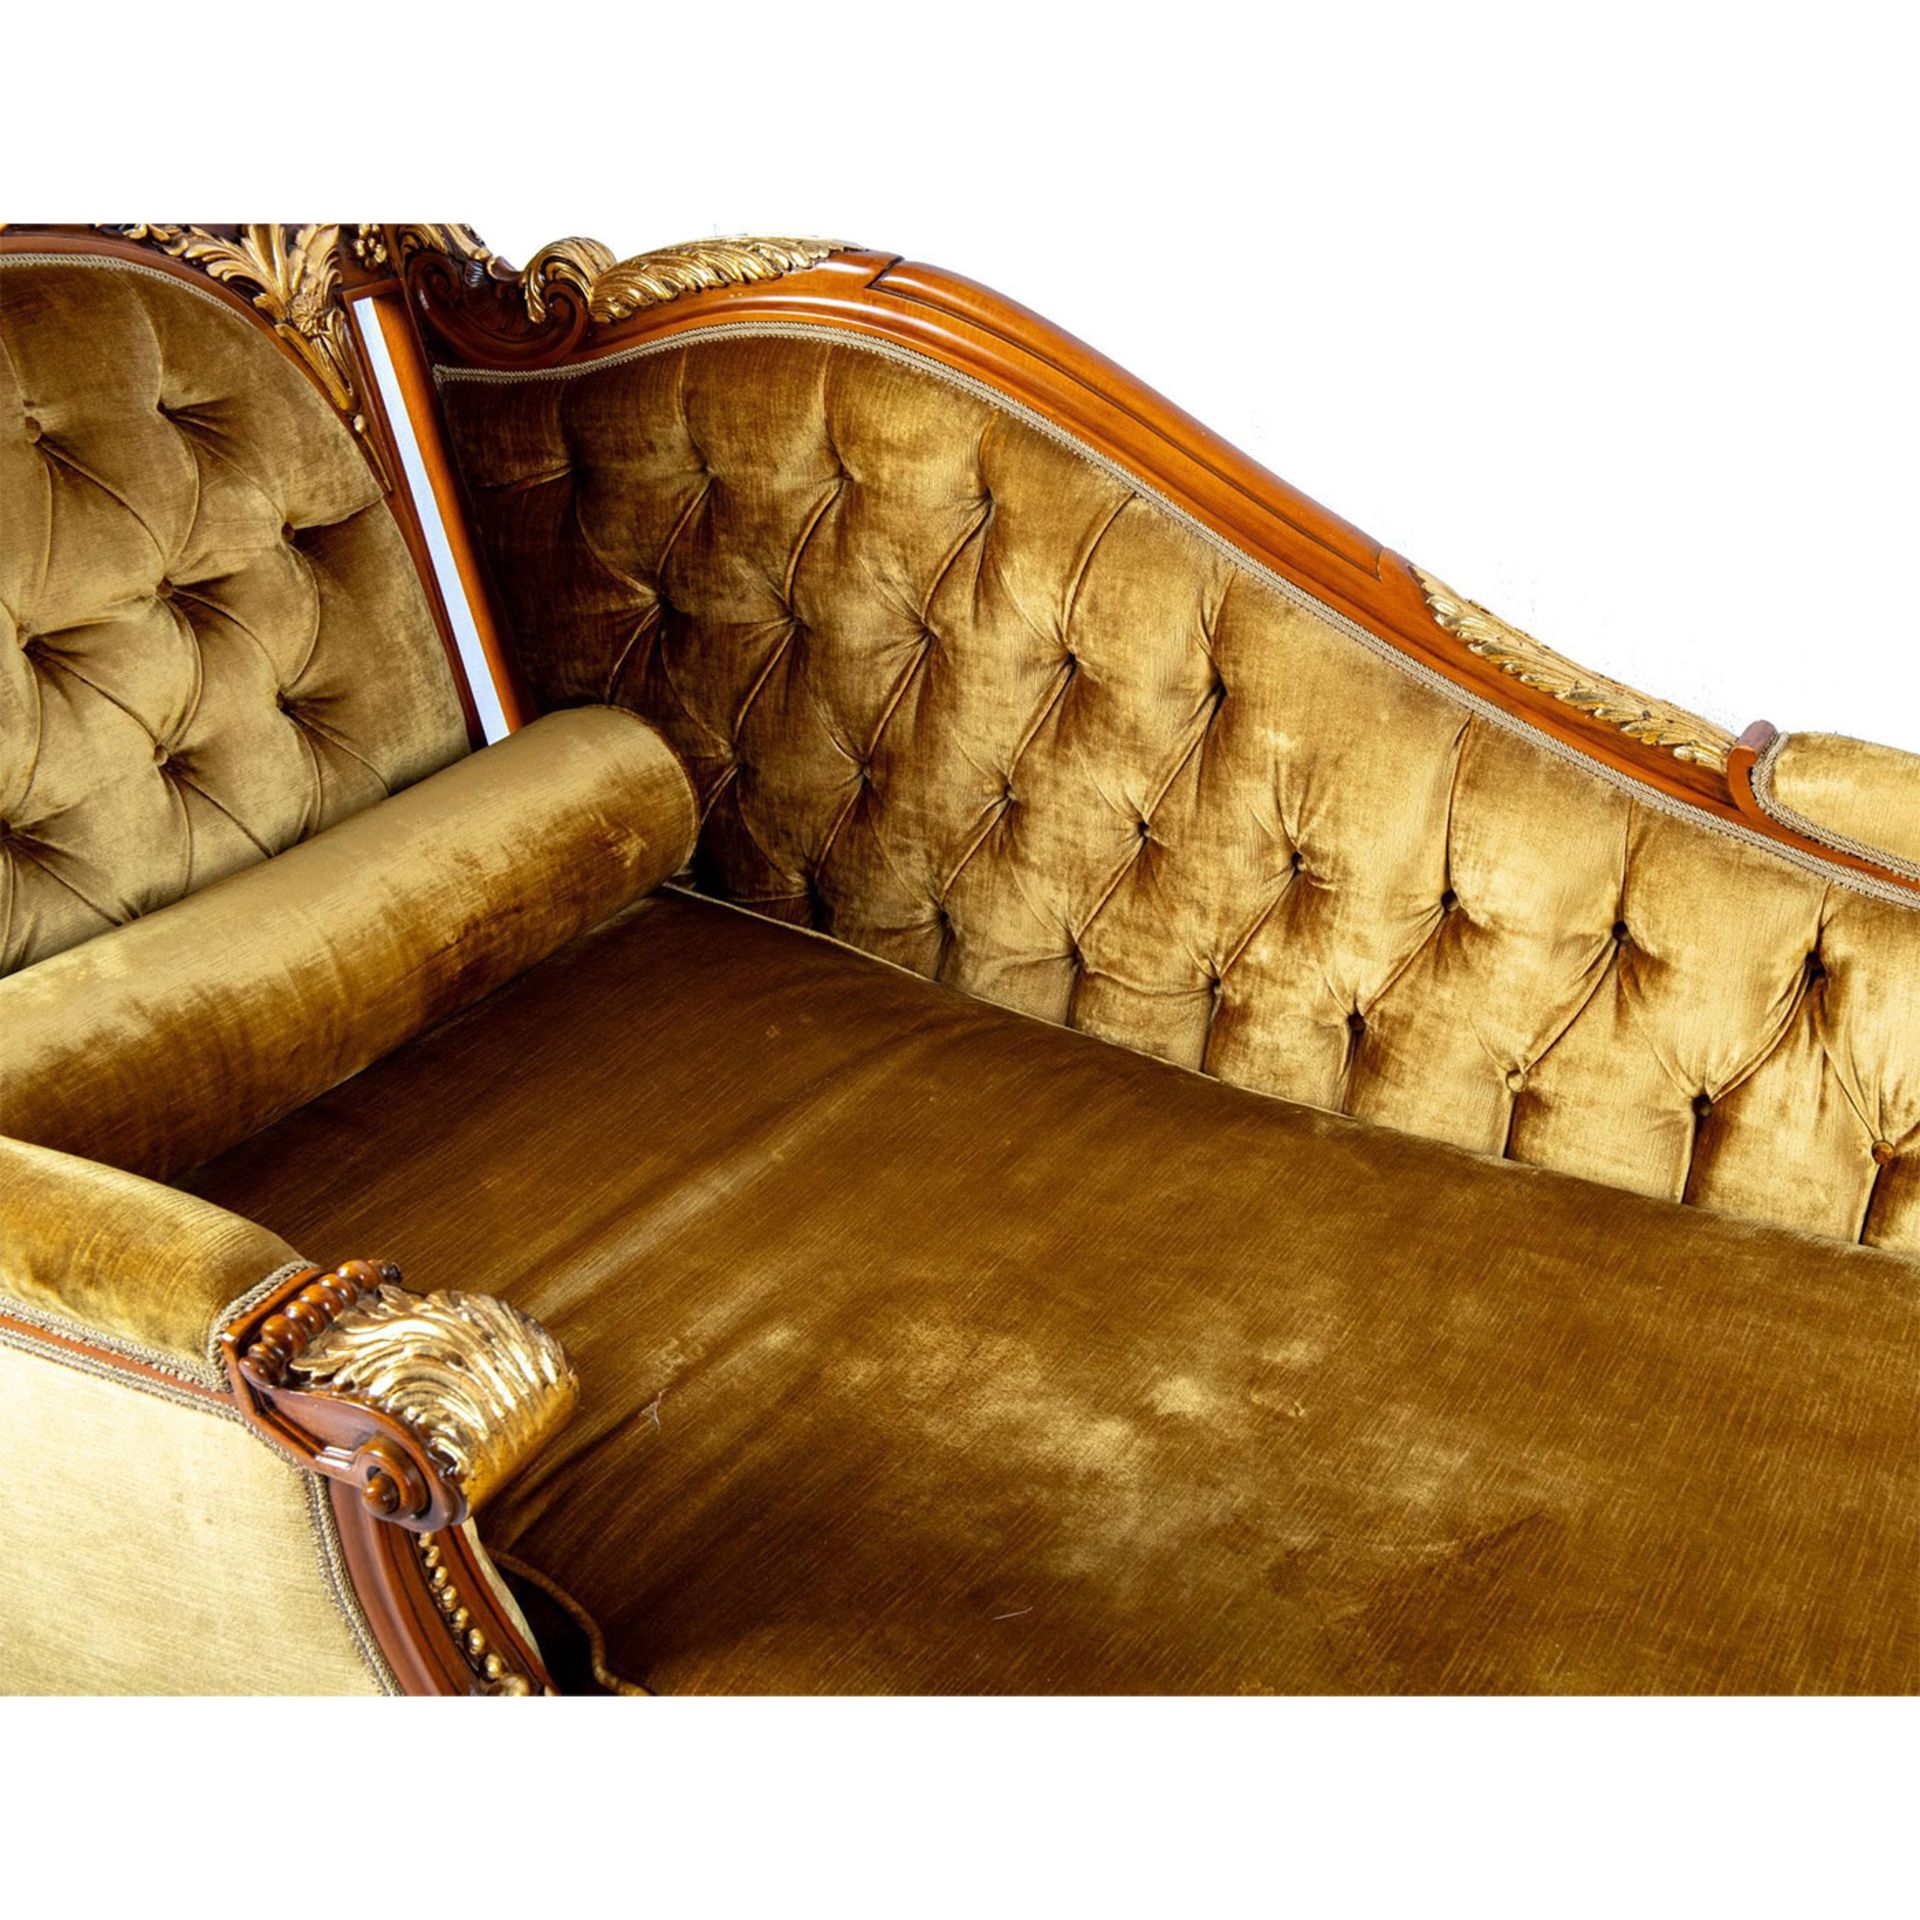 Lavish Baroque Style Chaise Lounge Sofa - Image 4 of 5